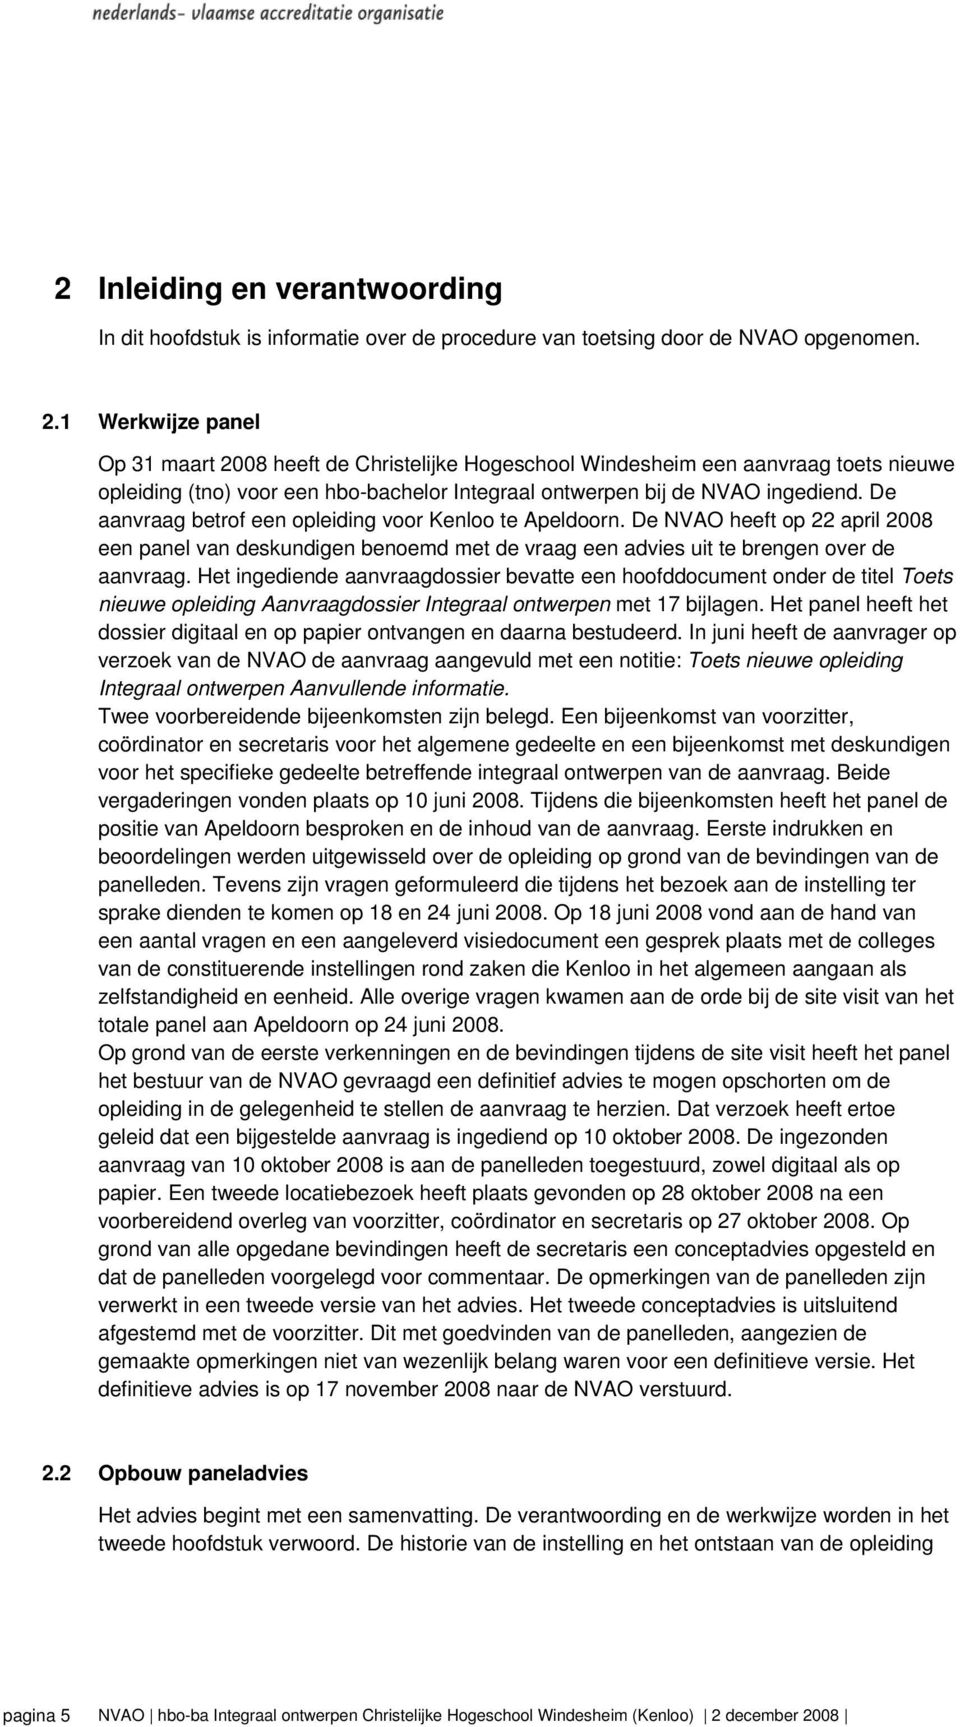 De aanvraag betrof een opleiding voor Kenloo te Apeldoorn. De NVAO heeft op 22 april 2008 een panel van deskundigen benoemd met de vraag een advies uit te brengen over de aanvraag.